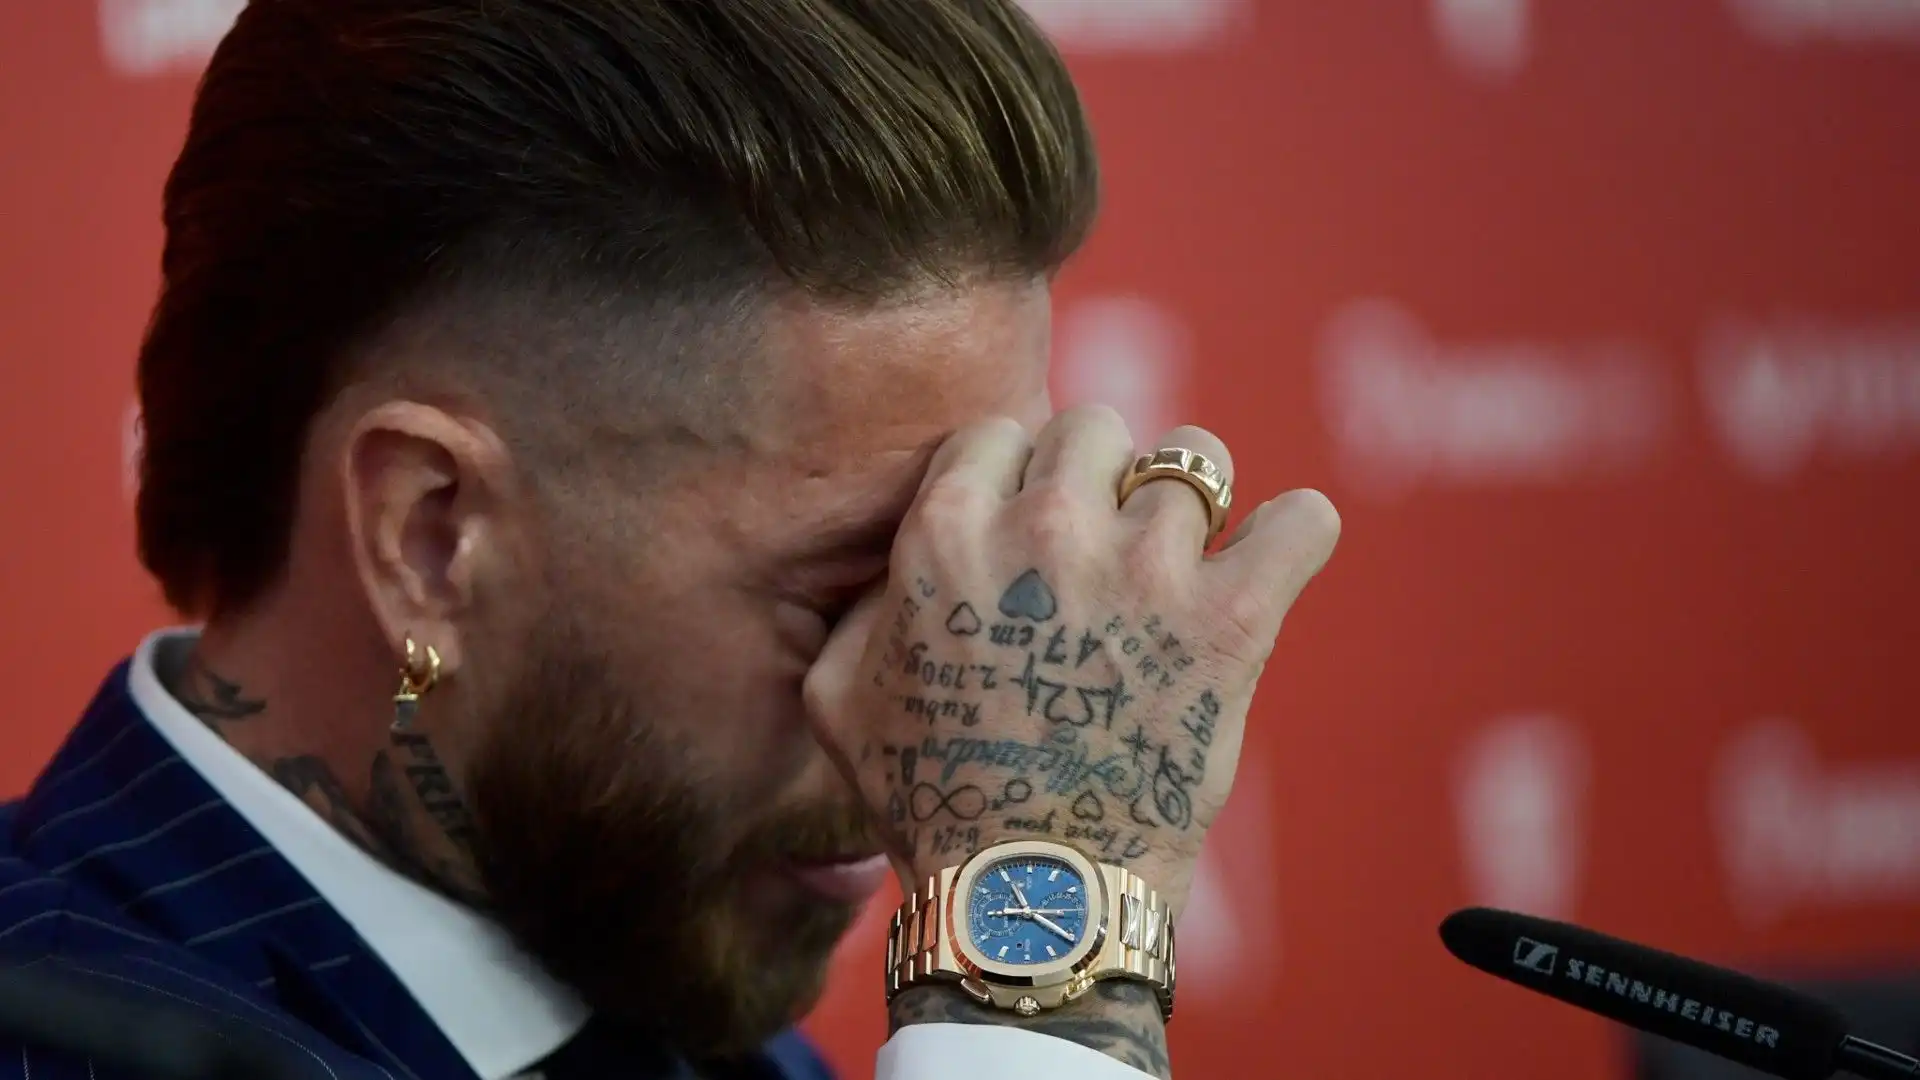 Le commoventi immagini di Sergio Ramos in lacrime